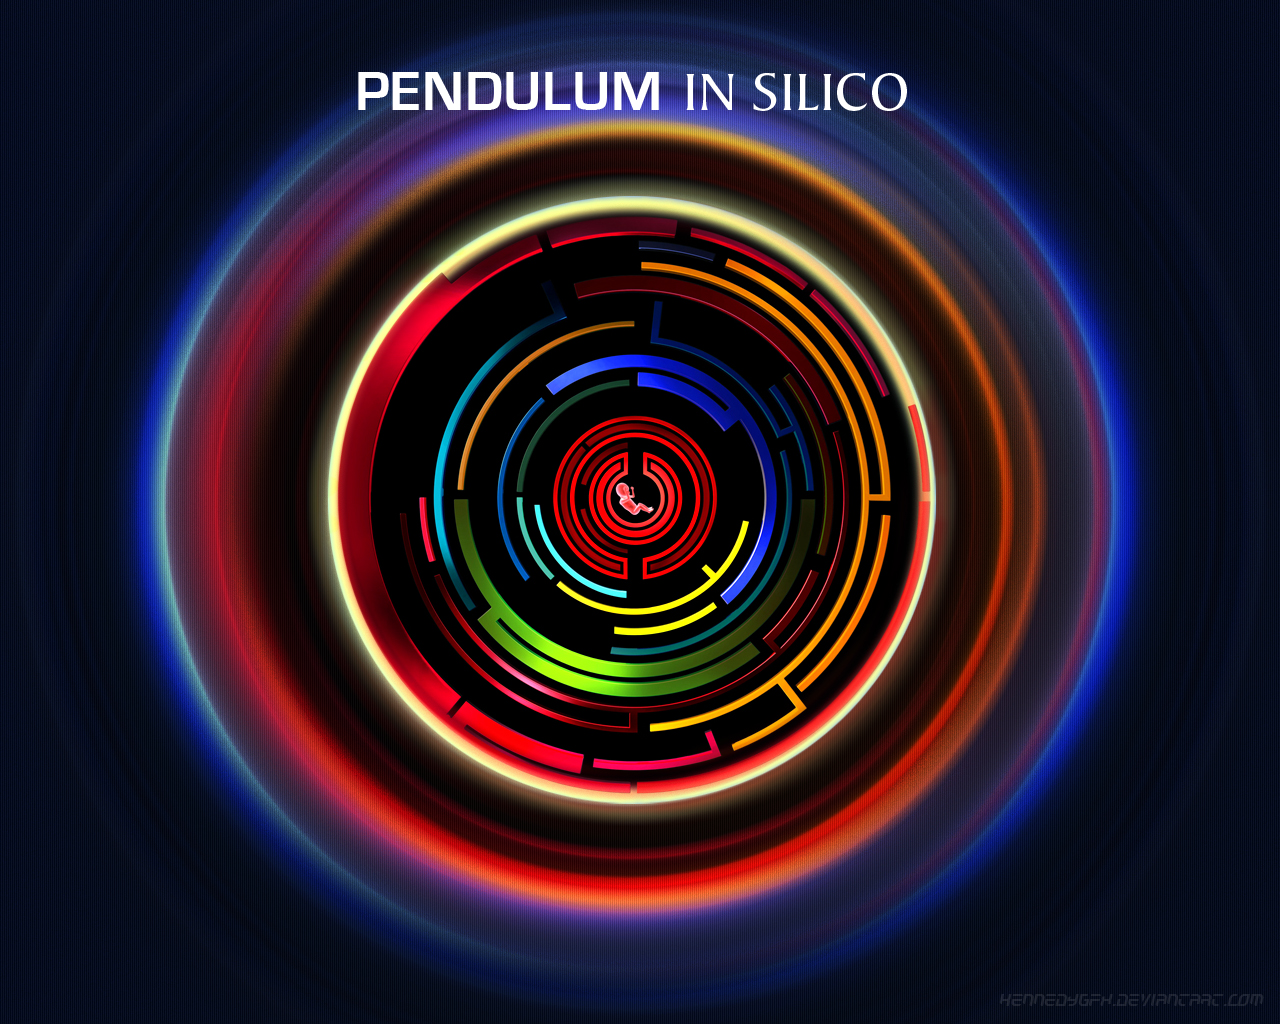 Pendulum in silico albums